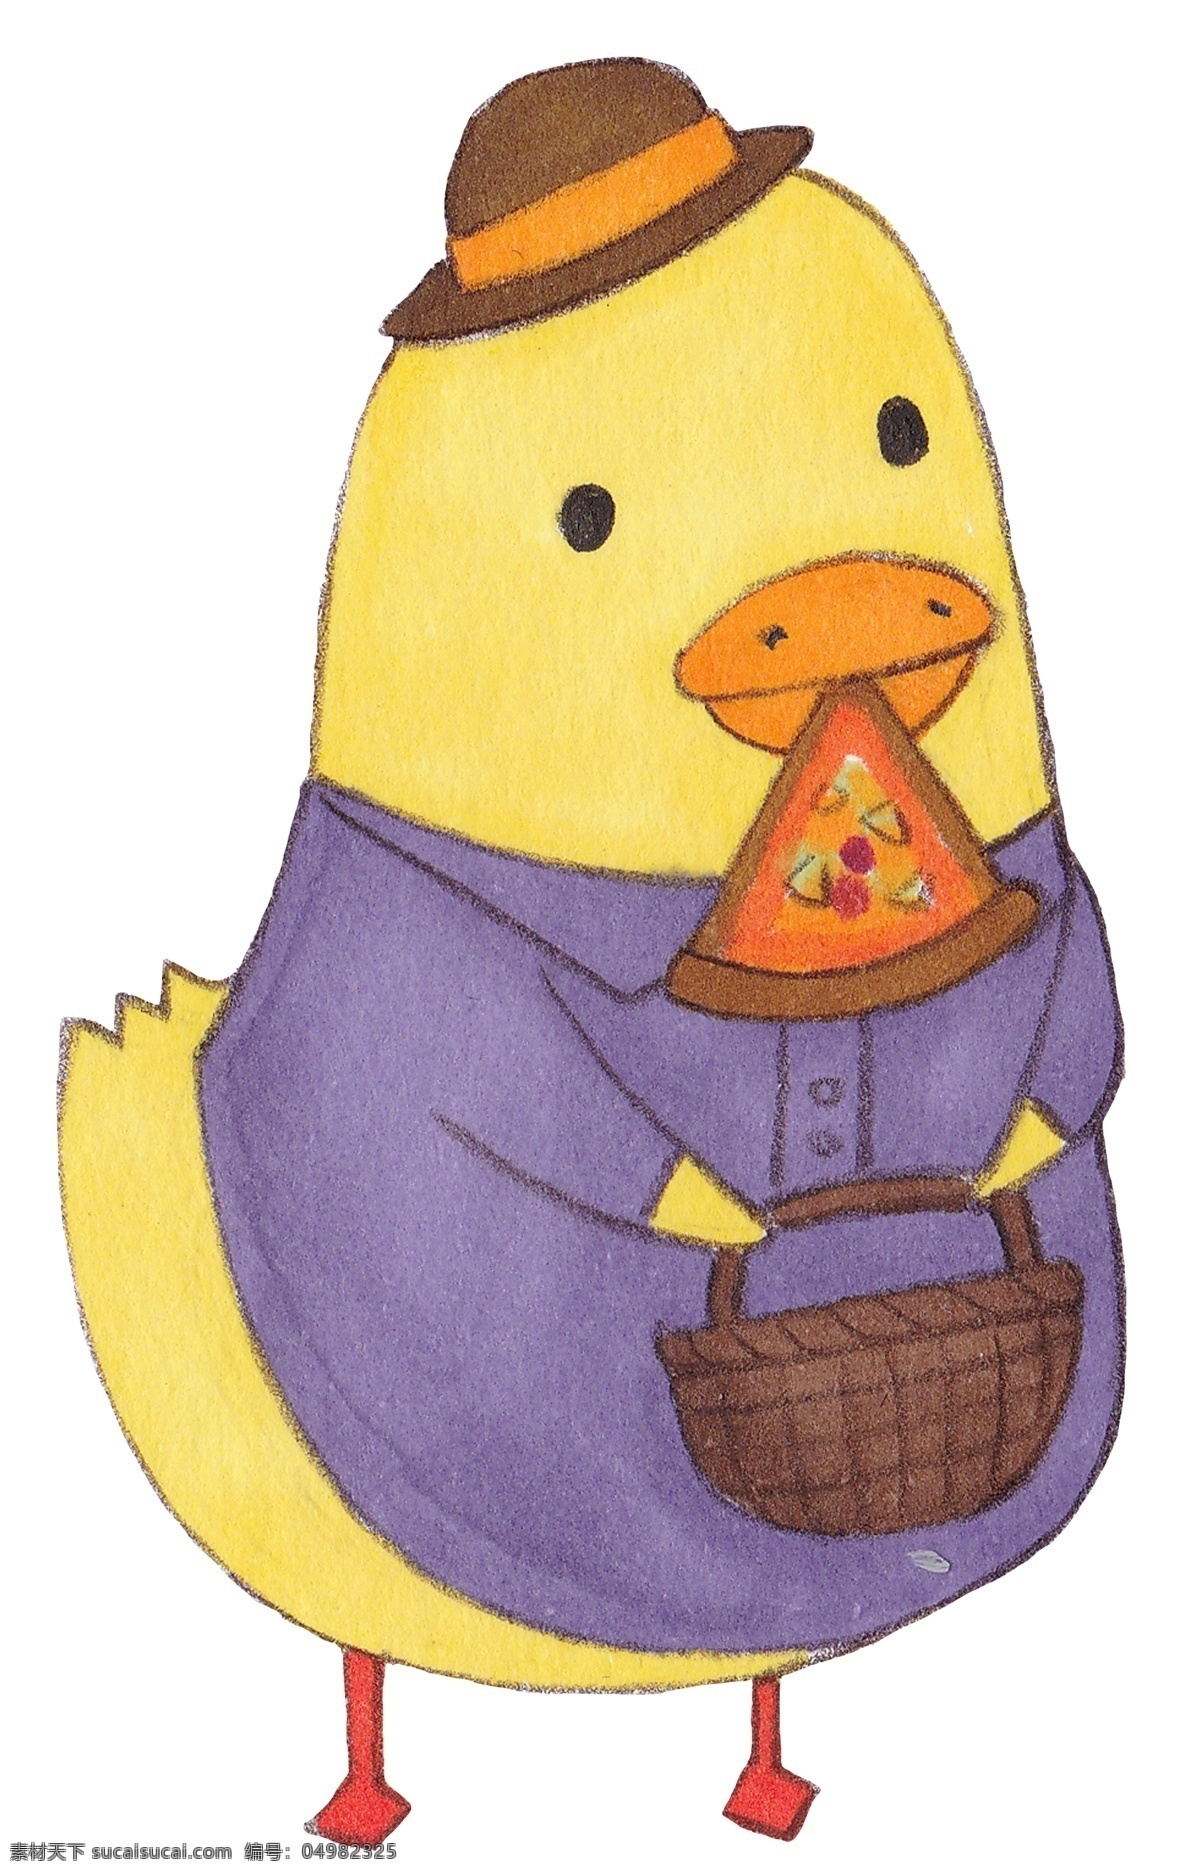 手绘 动物 小小 黄 鸡 插画 手绘水彩动物 动物小黄鸡 提 篮子 小黄 嘴里 叼 披萨 水彩小黄鸡 卡通